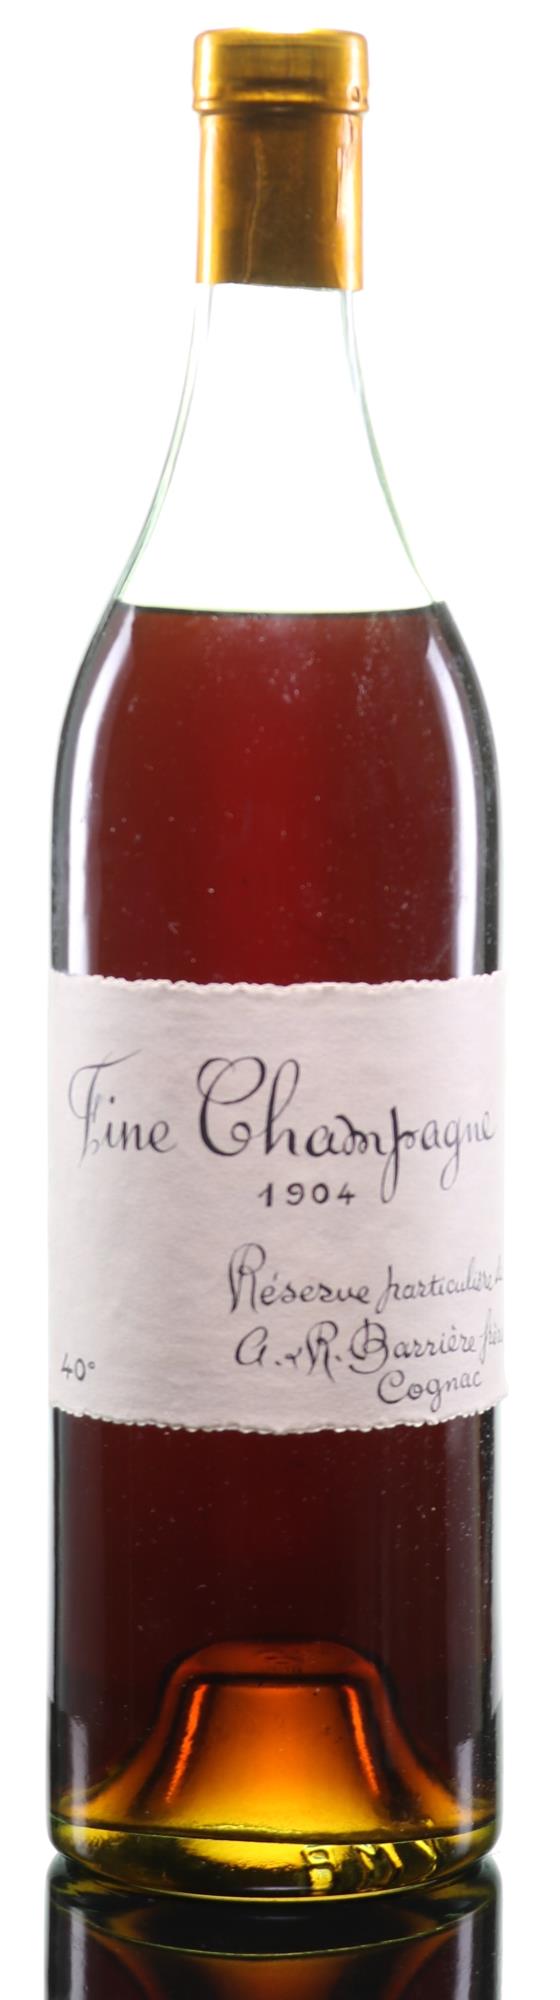 Barrière Freres Fine Champagne Réserve Particulière 1904 Cognac - Rue Pinard